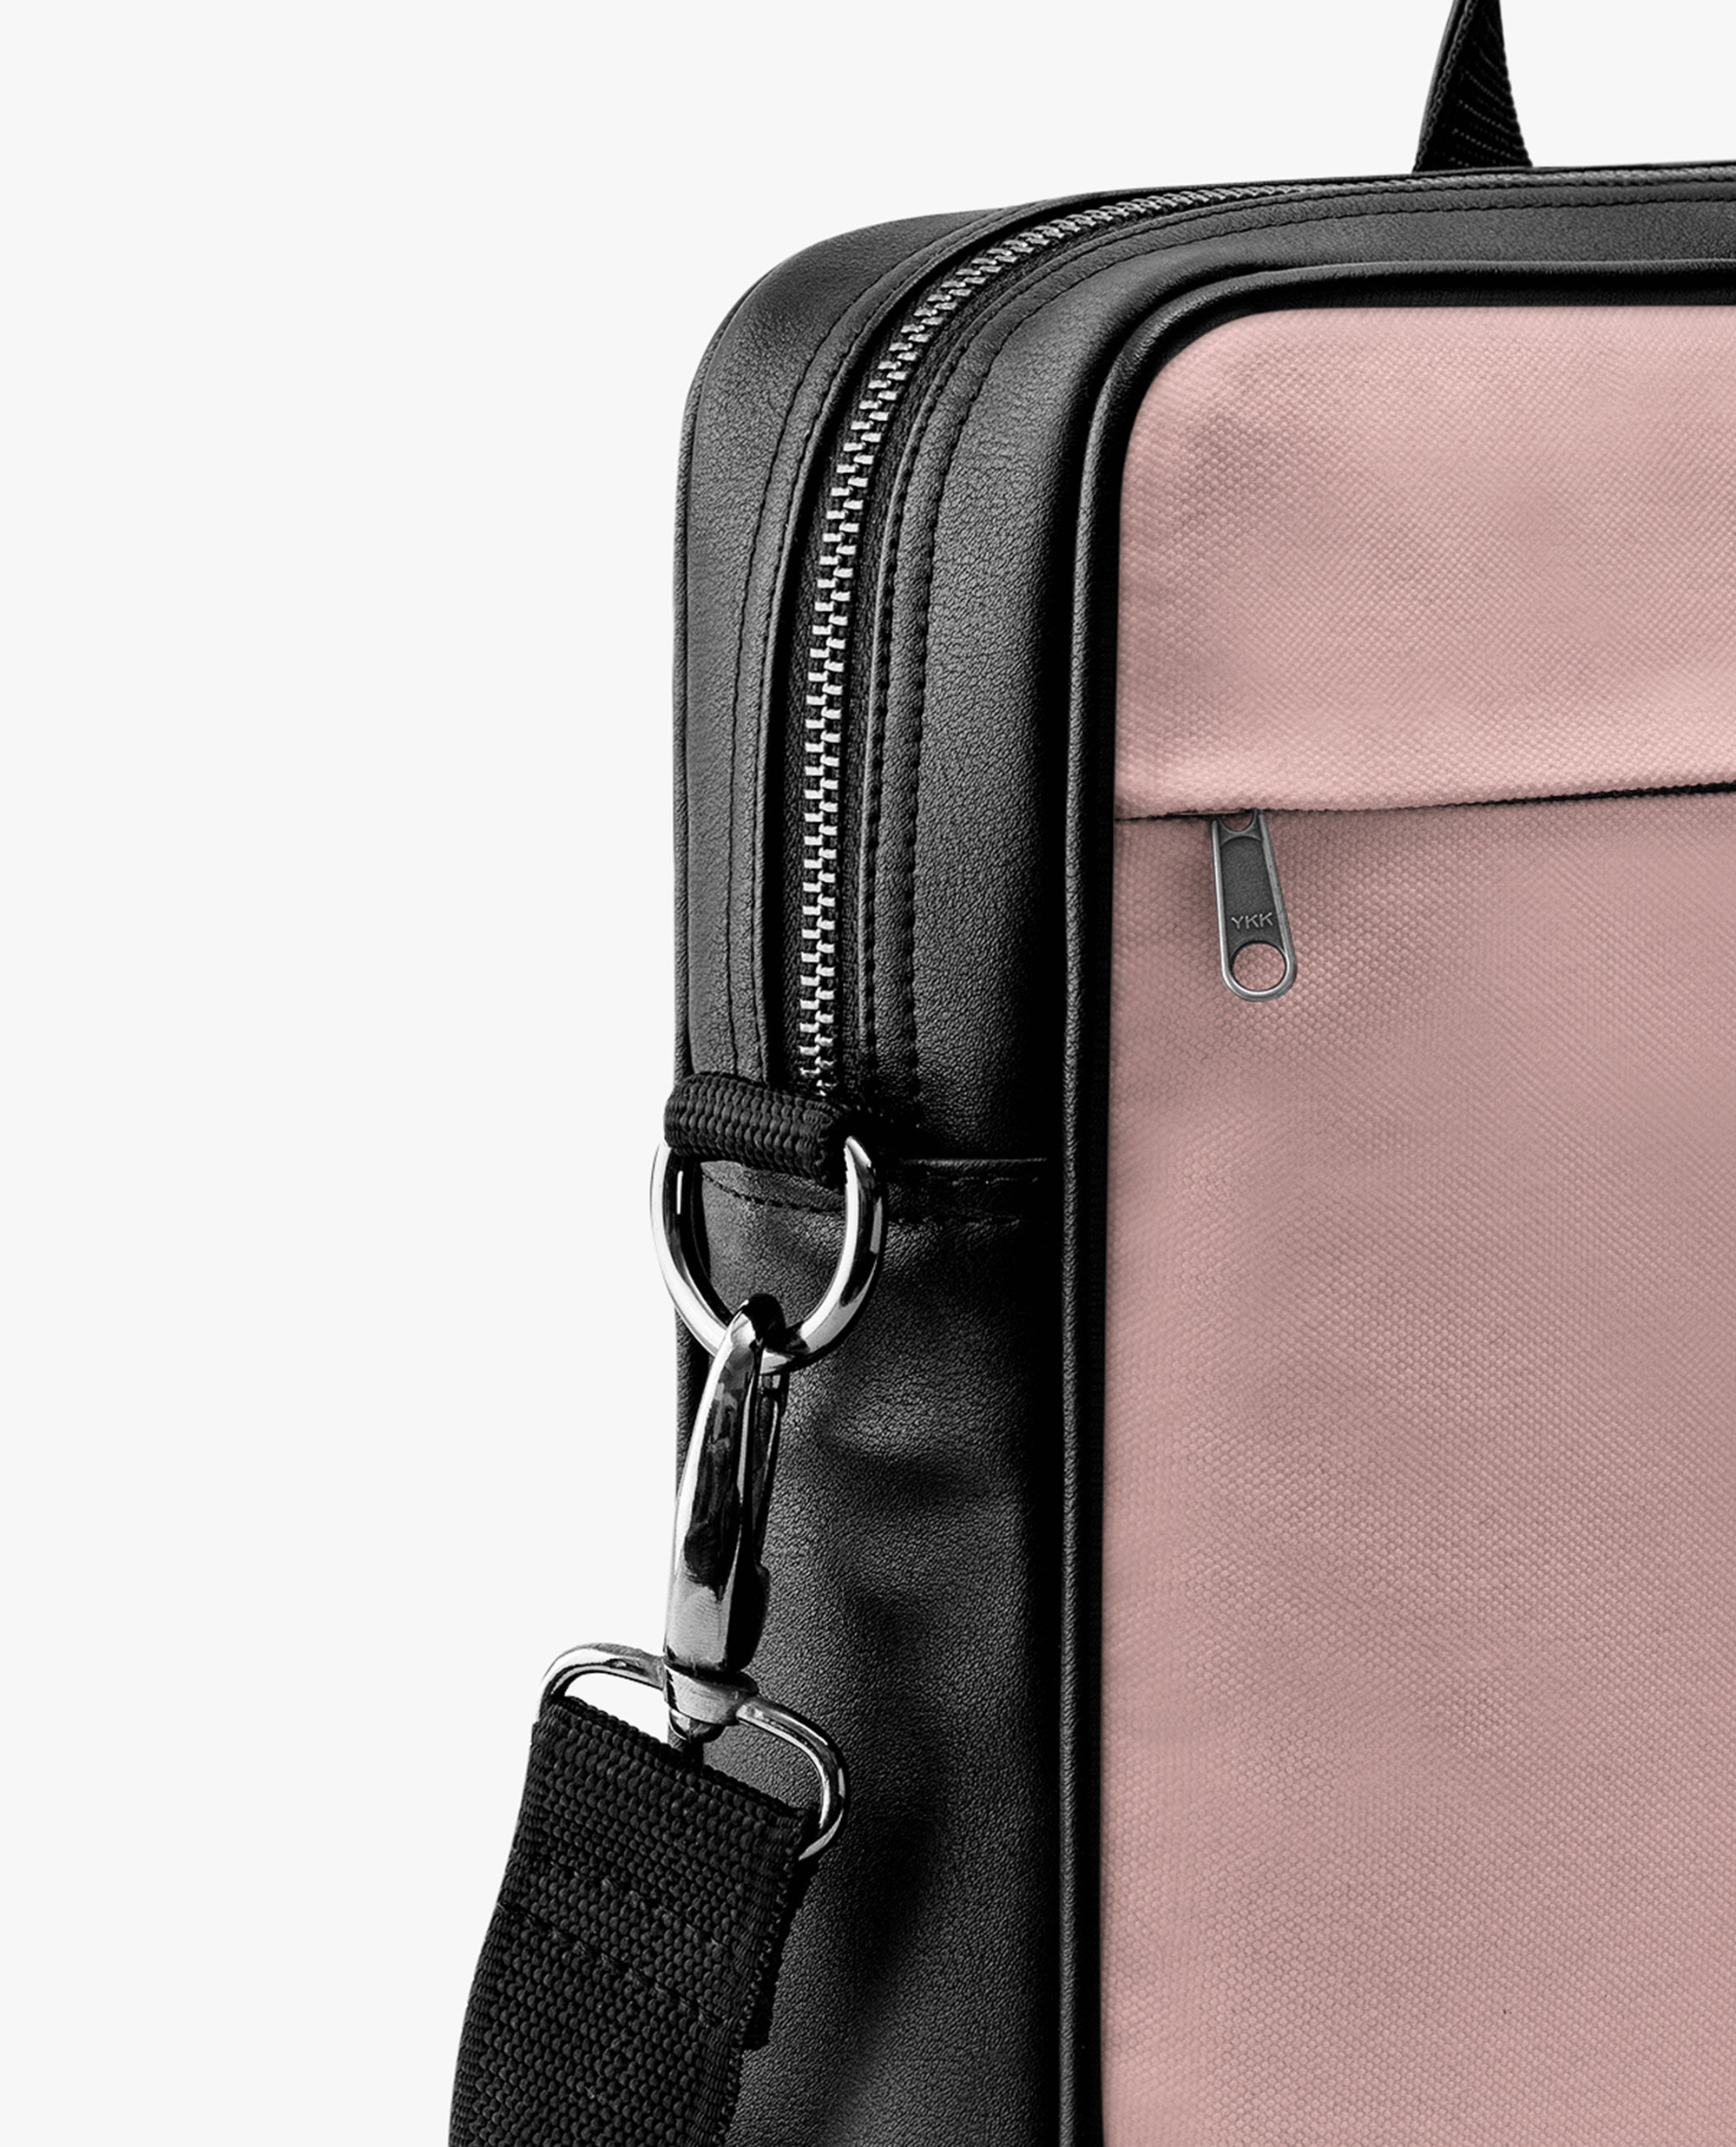 WINK KANGAROO Fashion Shoulder Bag Rucksack PU Leather Women Girls Ladies  Backpack Travel bag : Amazon.in: Fashion